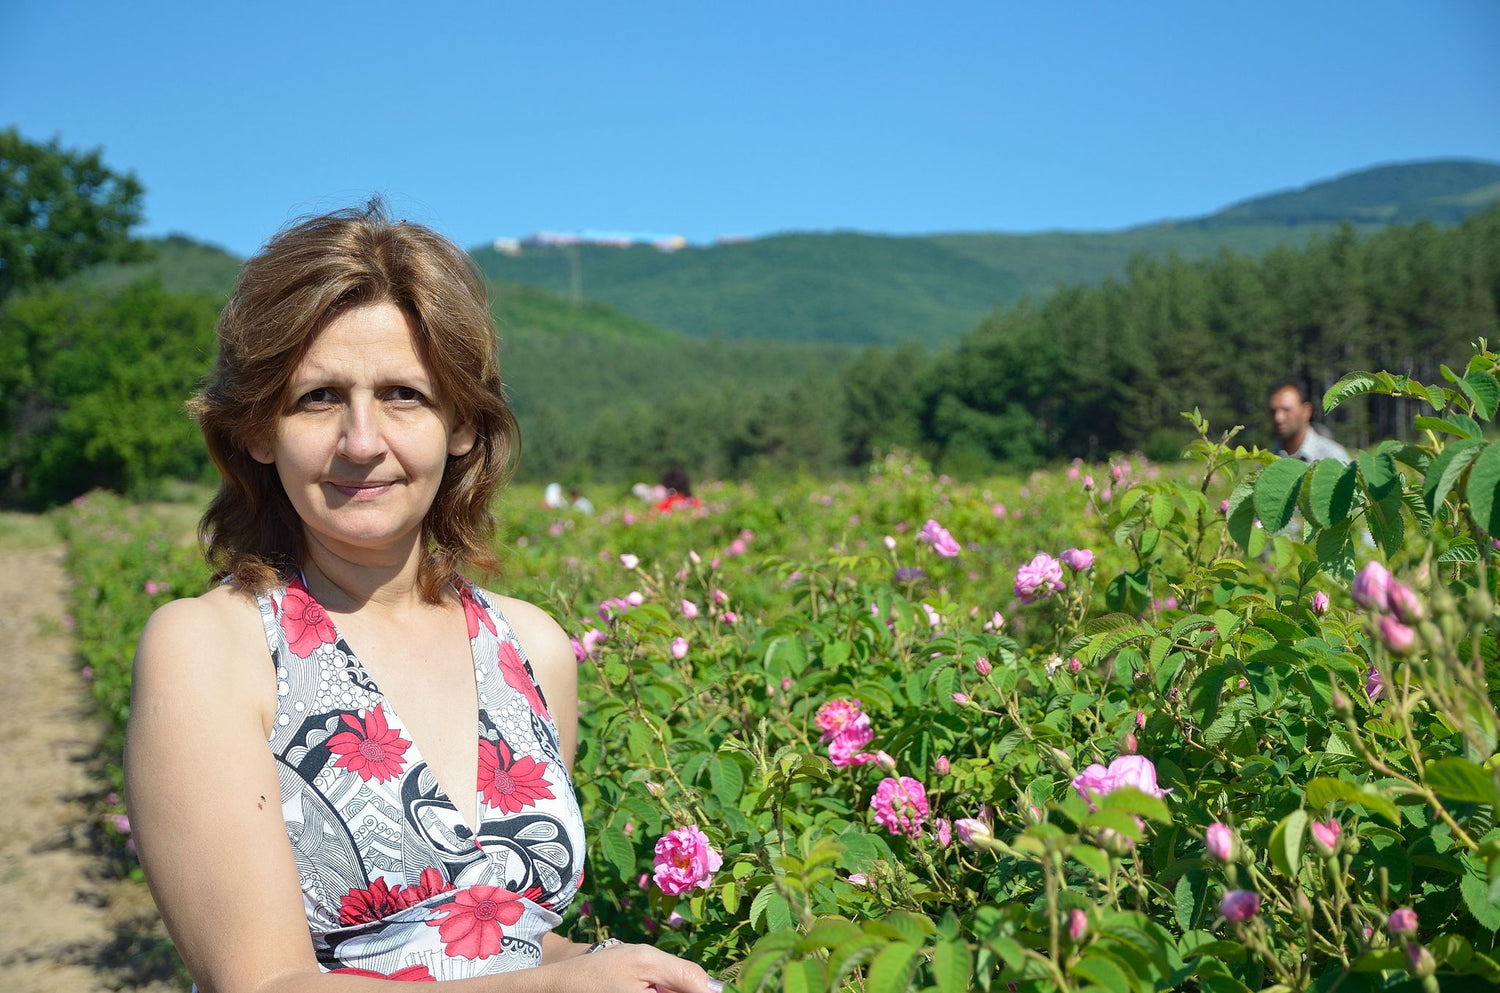 L'agricoltore biologico dell'anno Vessi Ralcheva ed i suoi prodotti rivoluzionari per l'acne e l'eczema